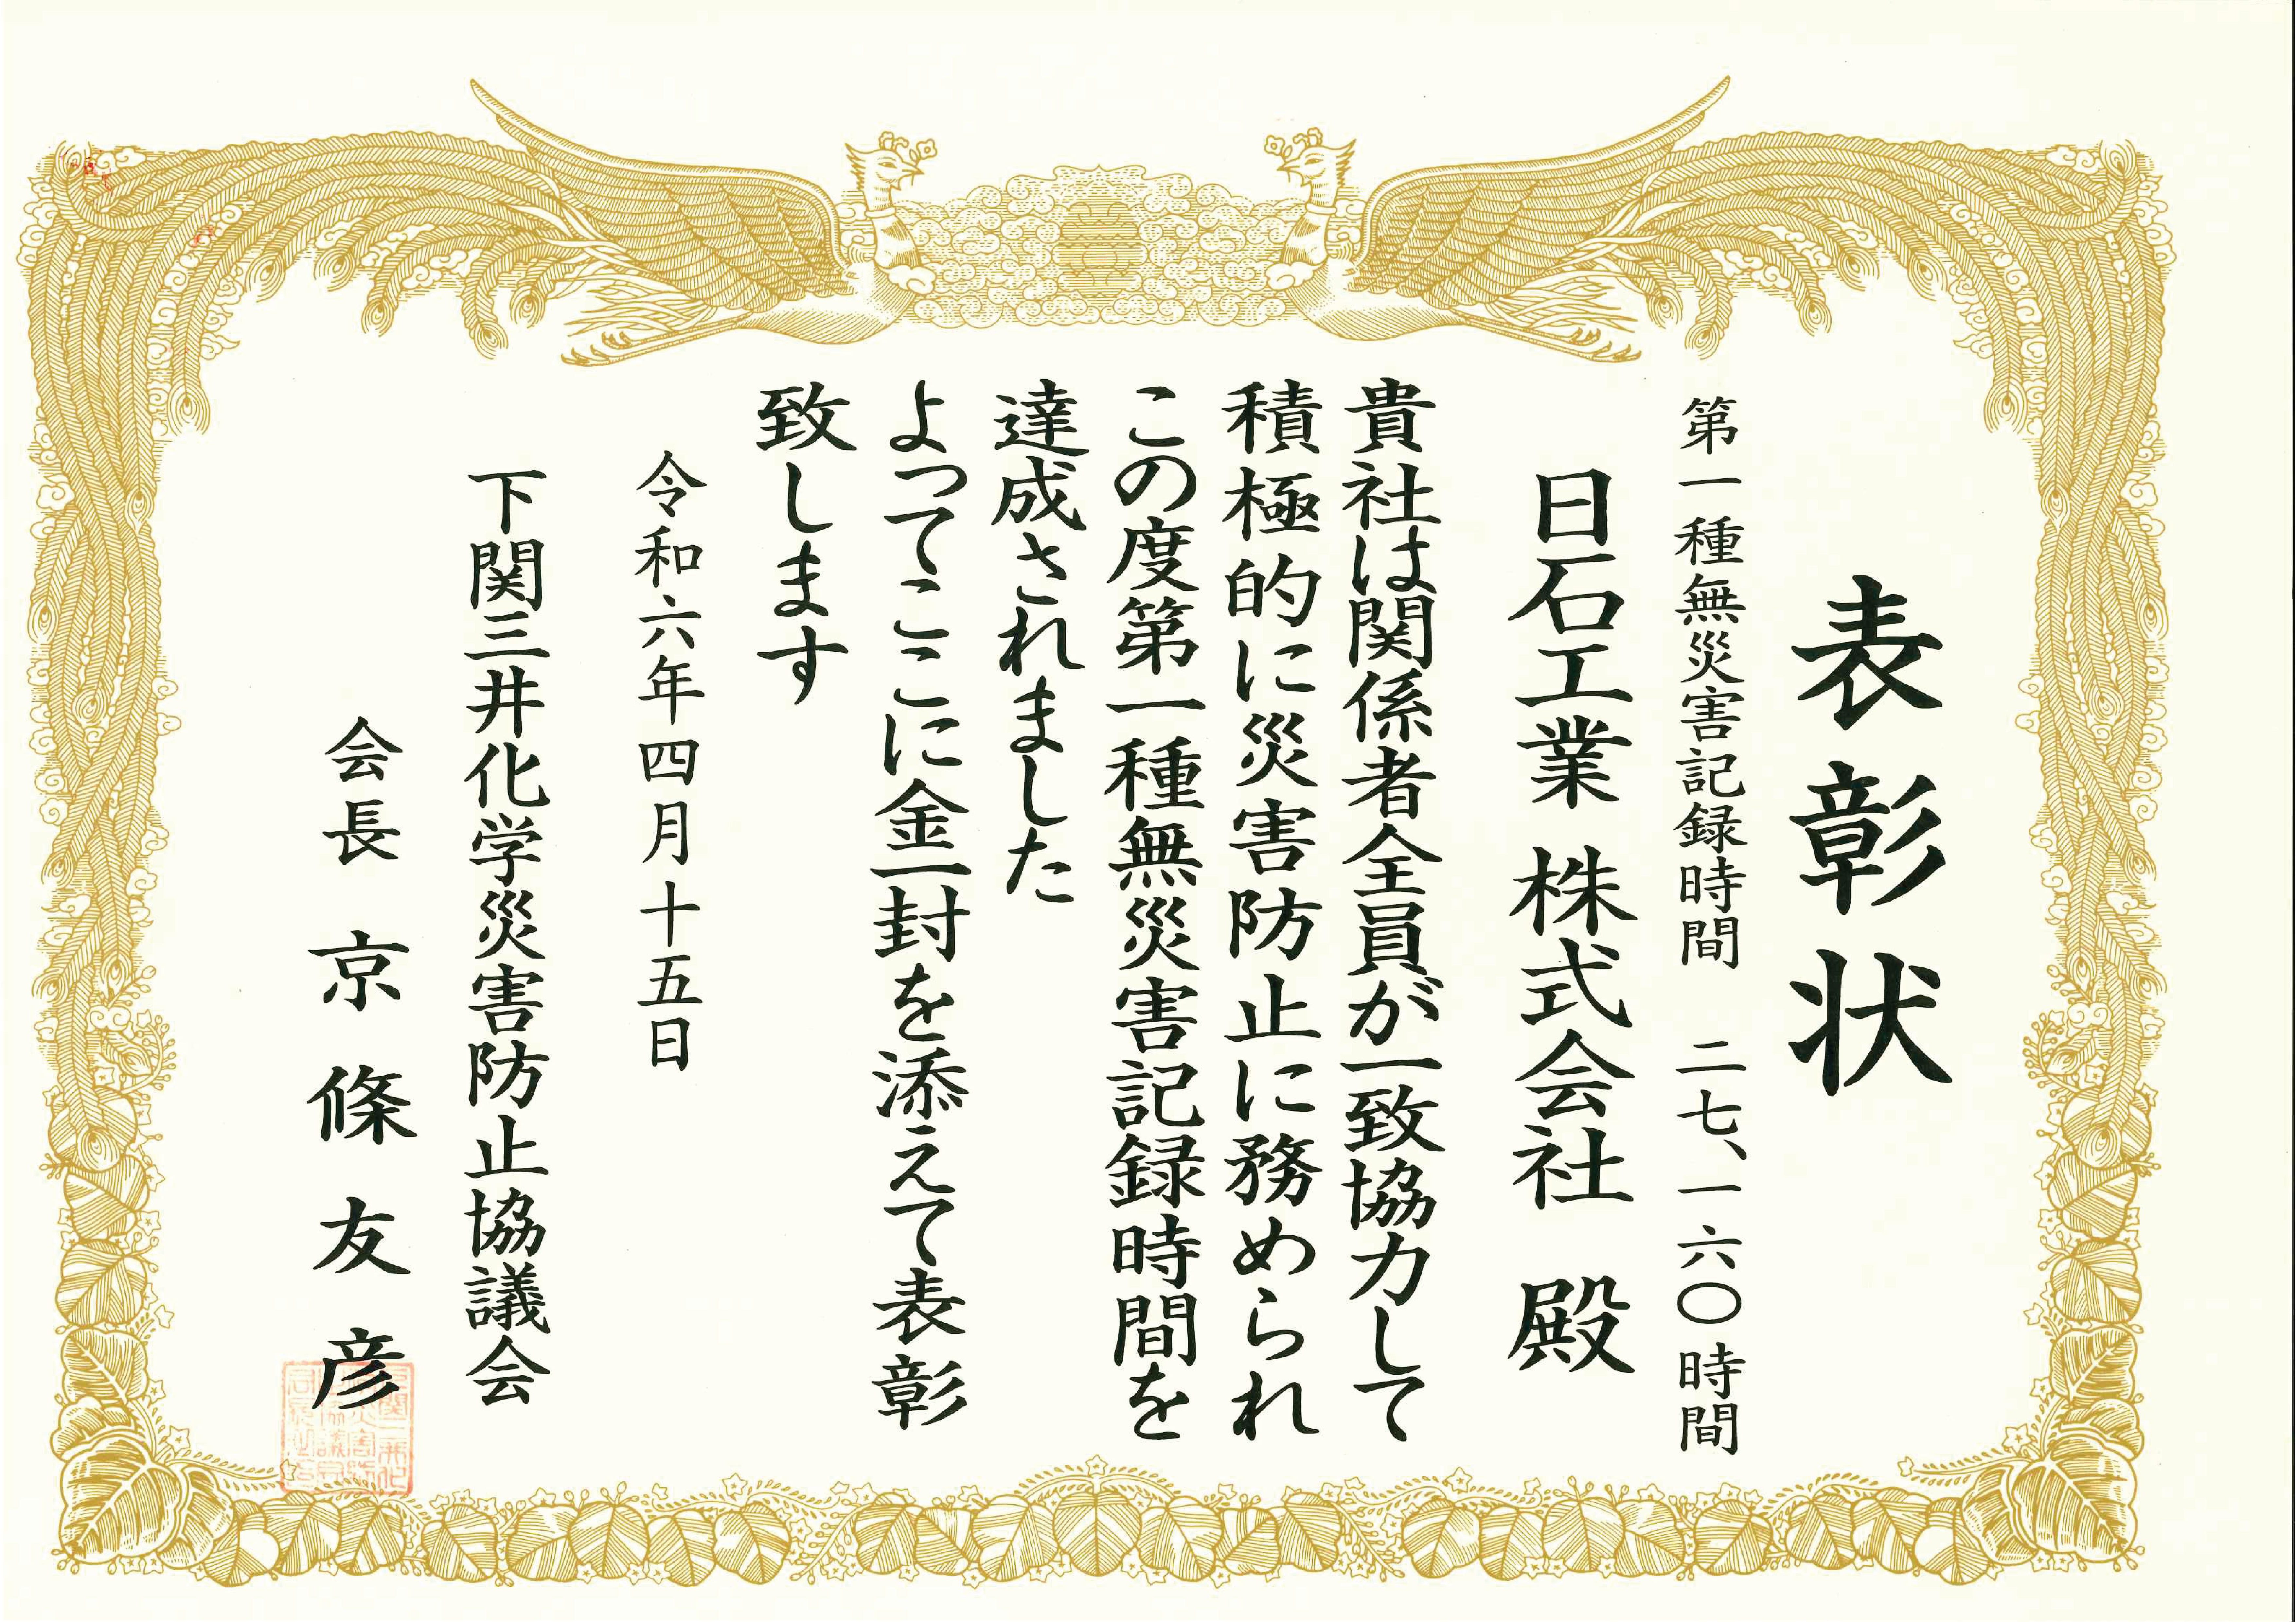 下関三井化学災害防止協議会様より安全表彰を頂きました。